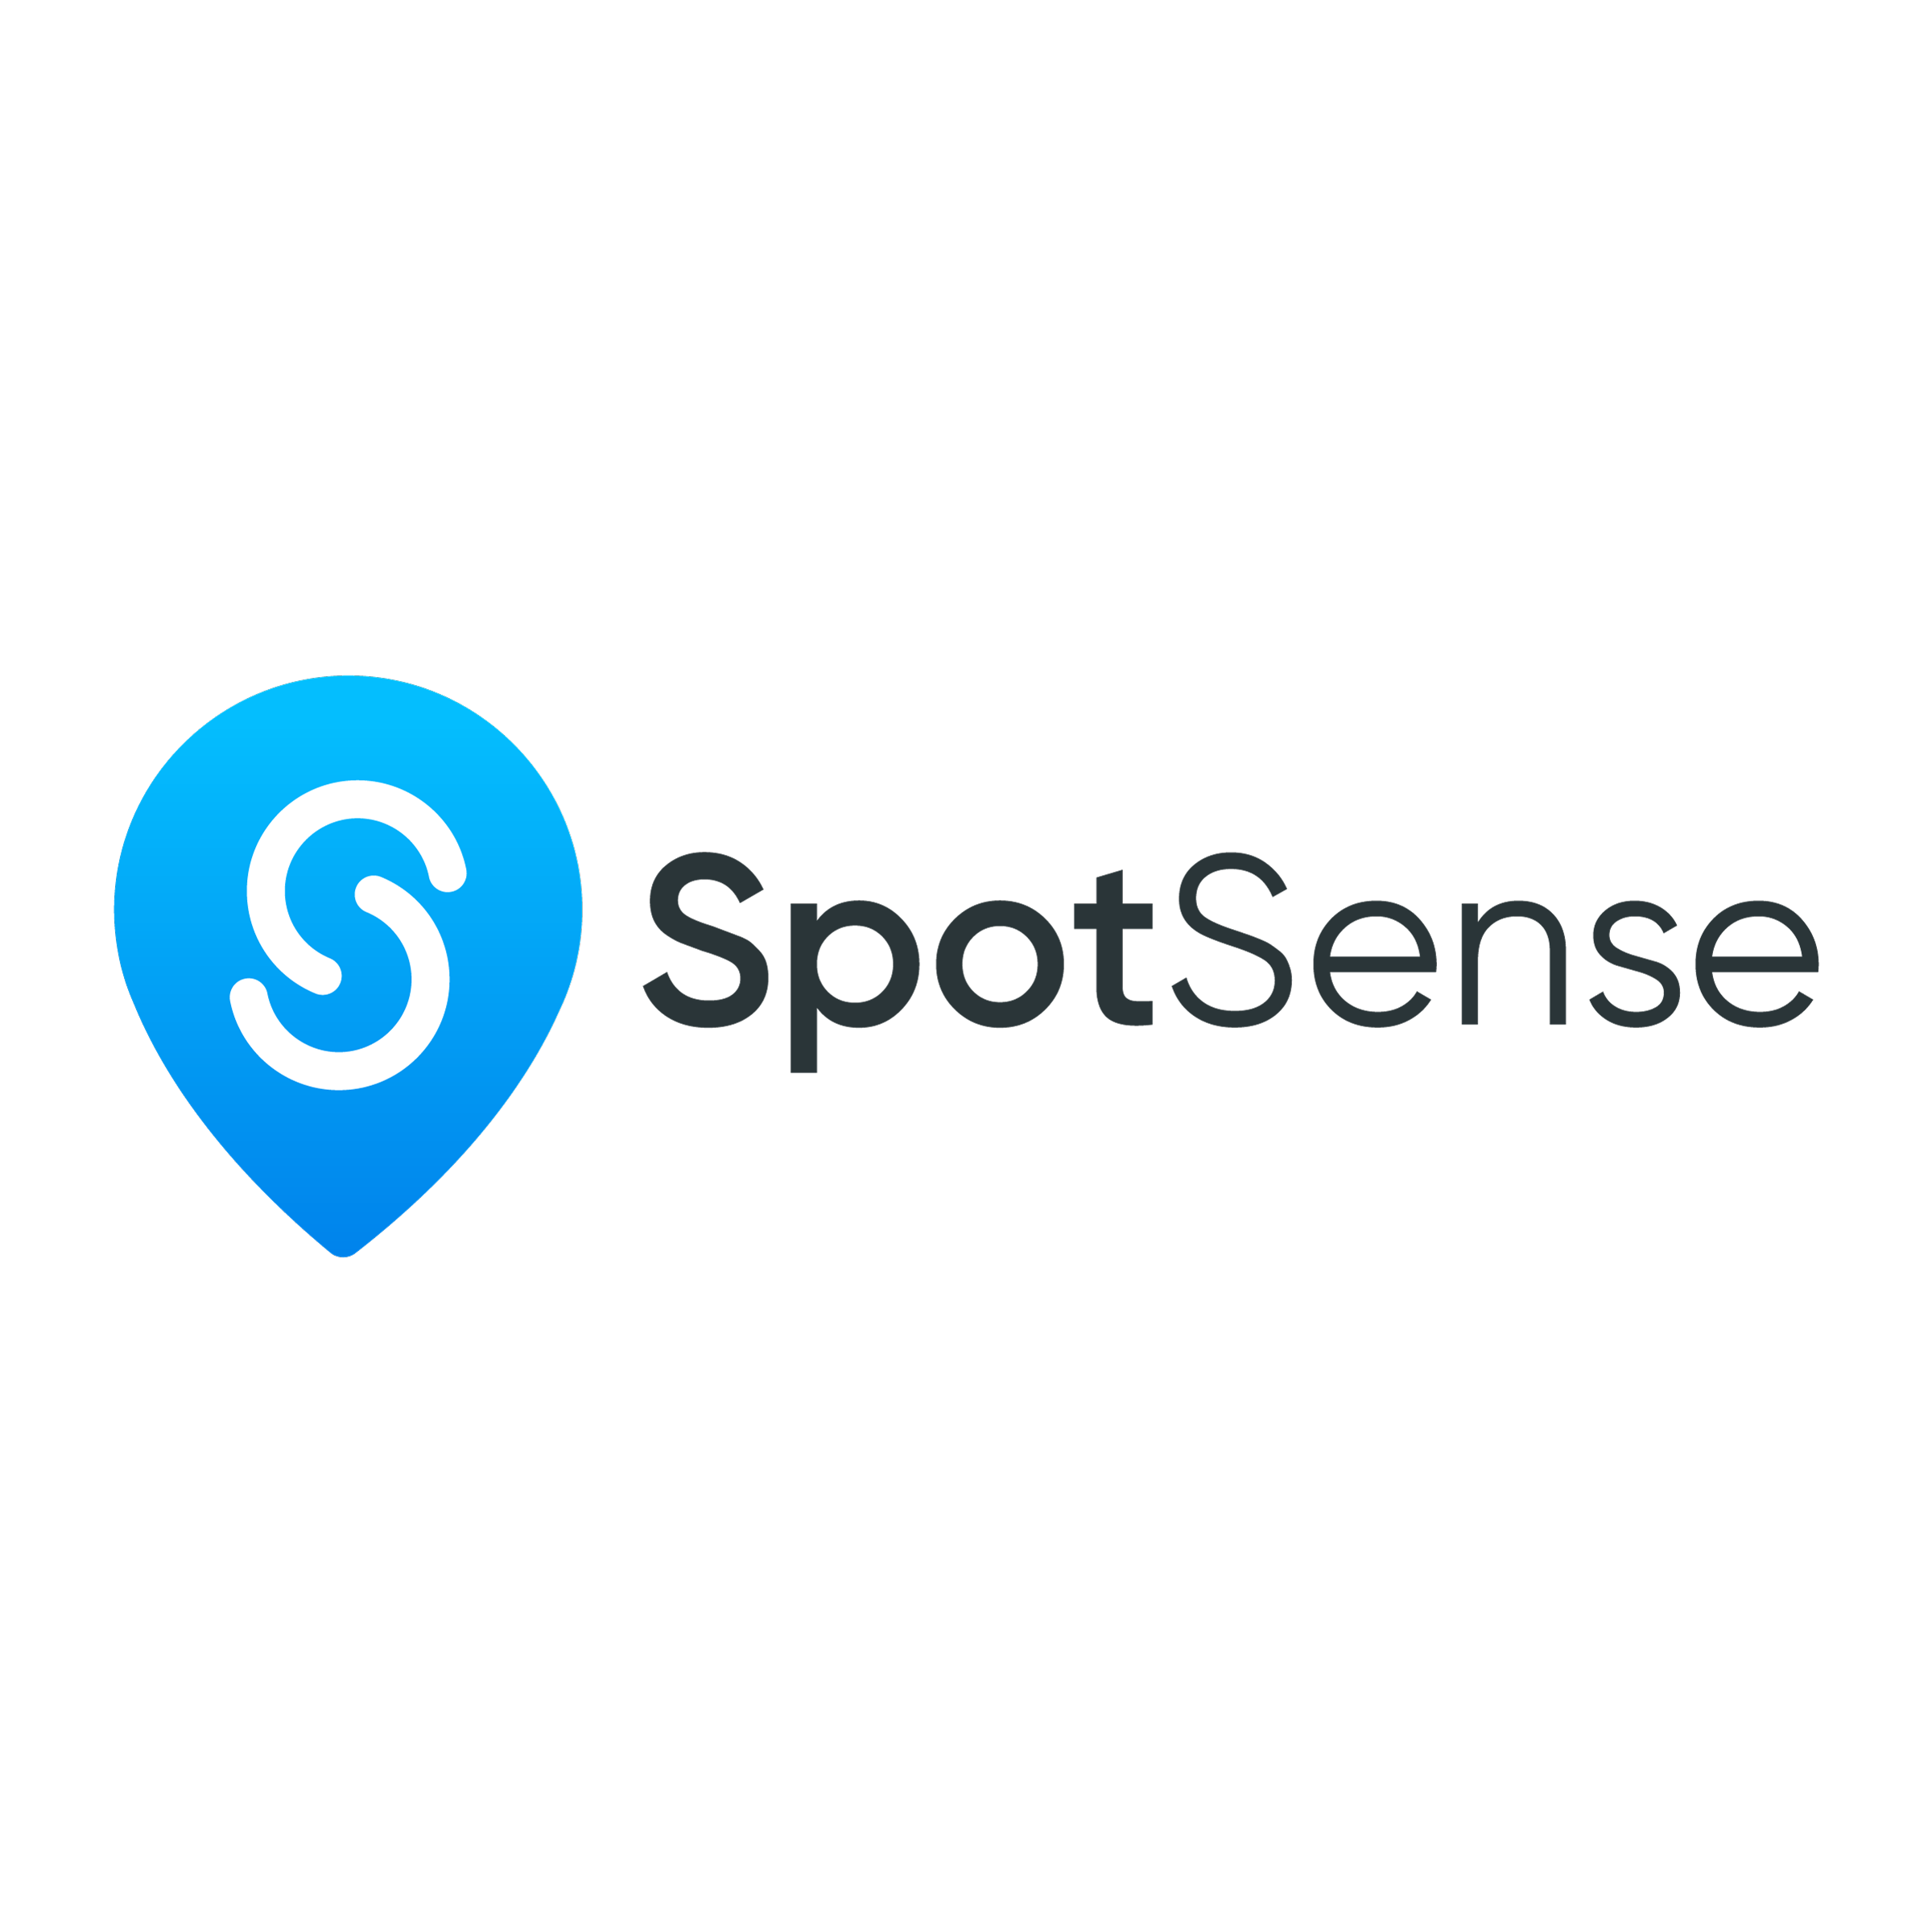 SpotSense